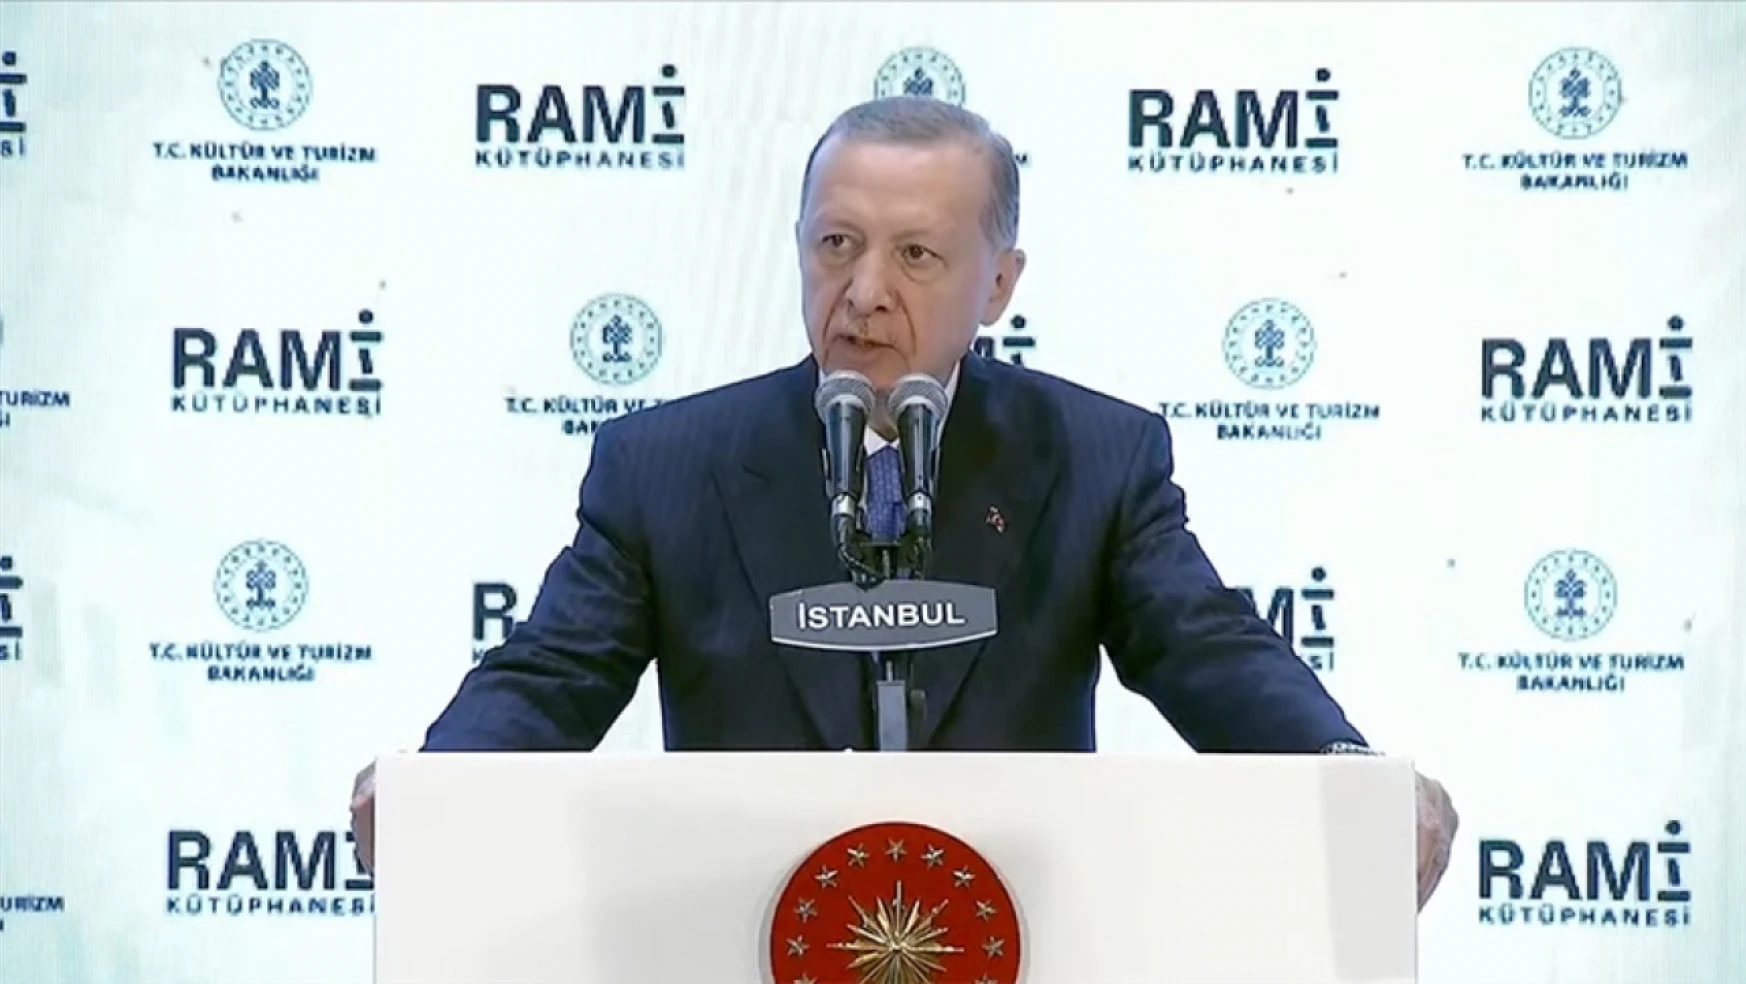 Cumhurbaşkanı Erdoğan Rami Kütüphanesini açtı